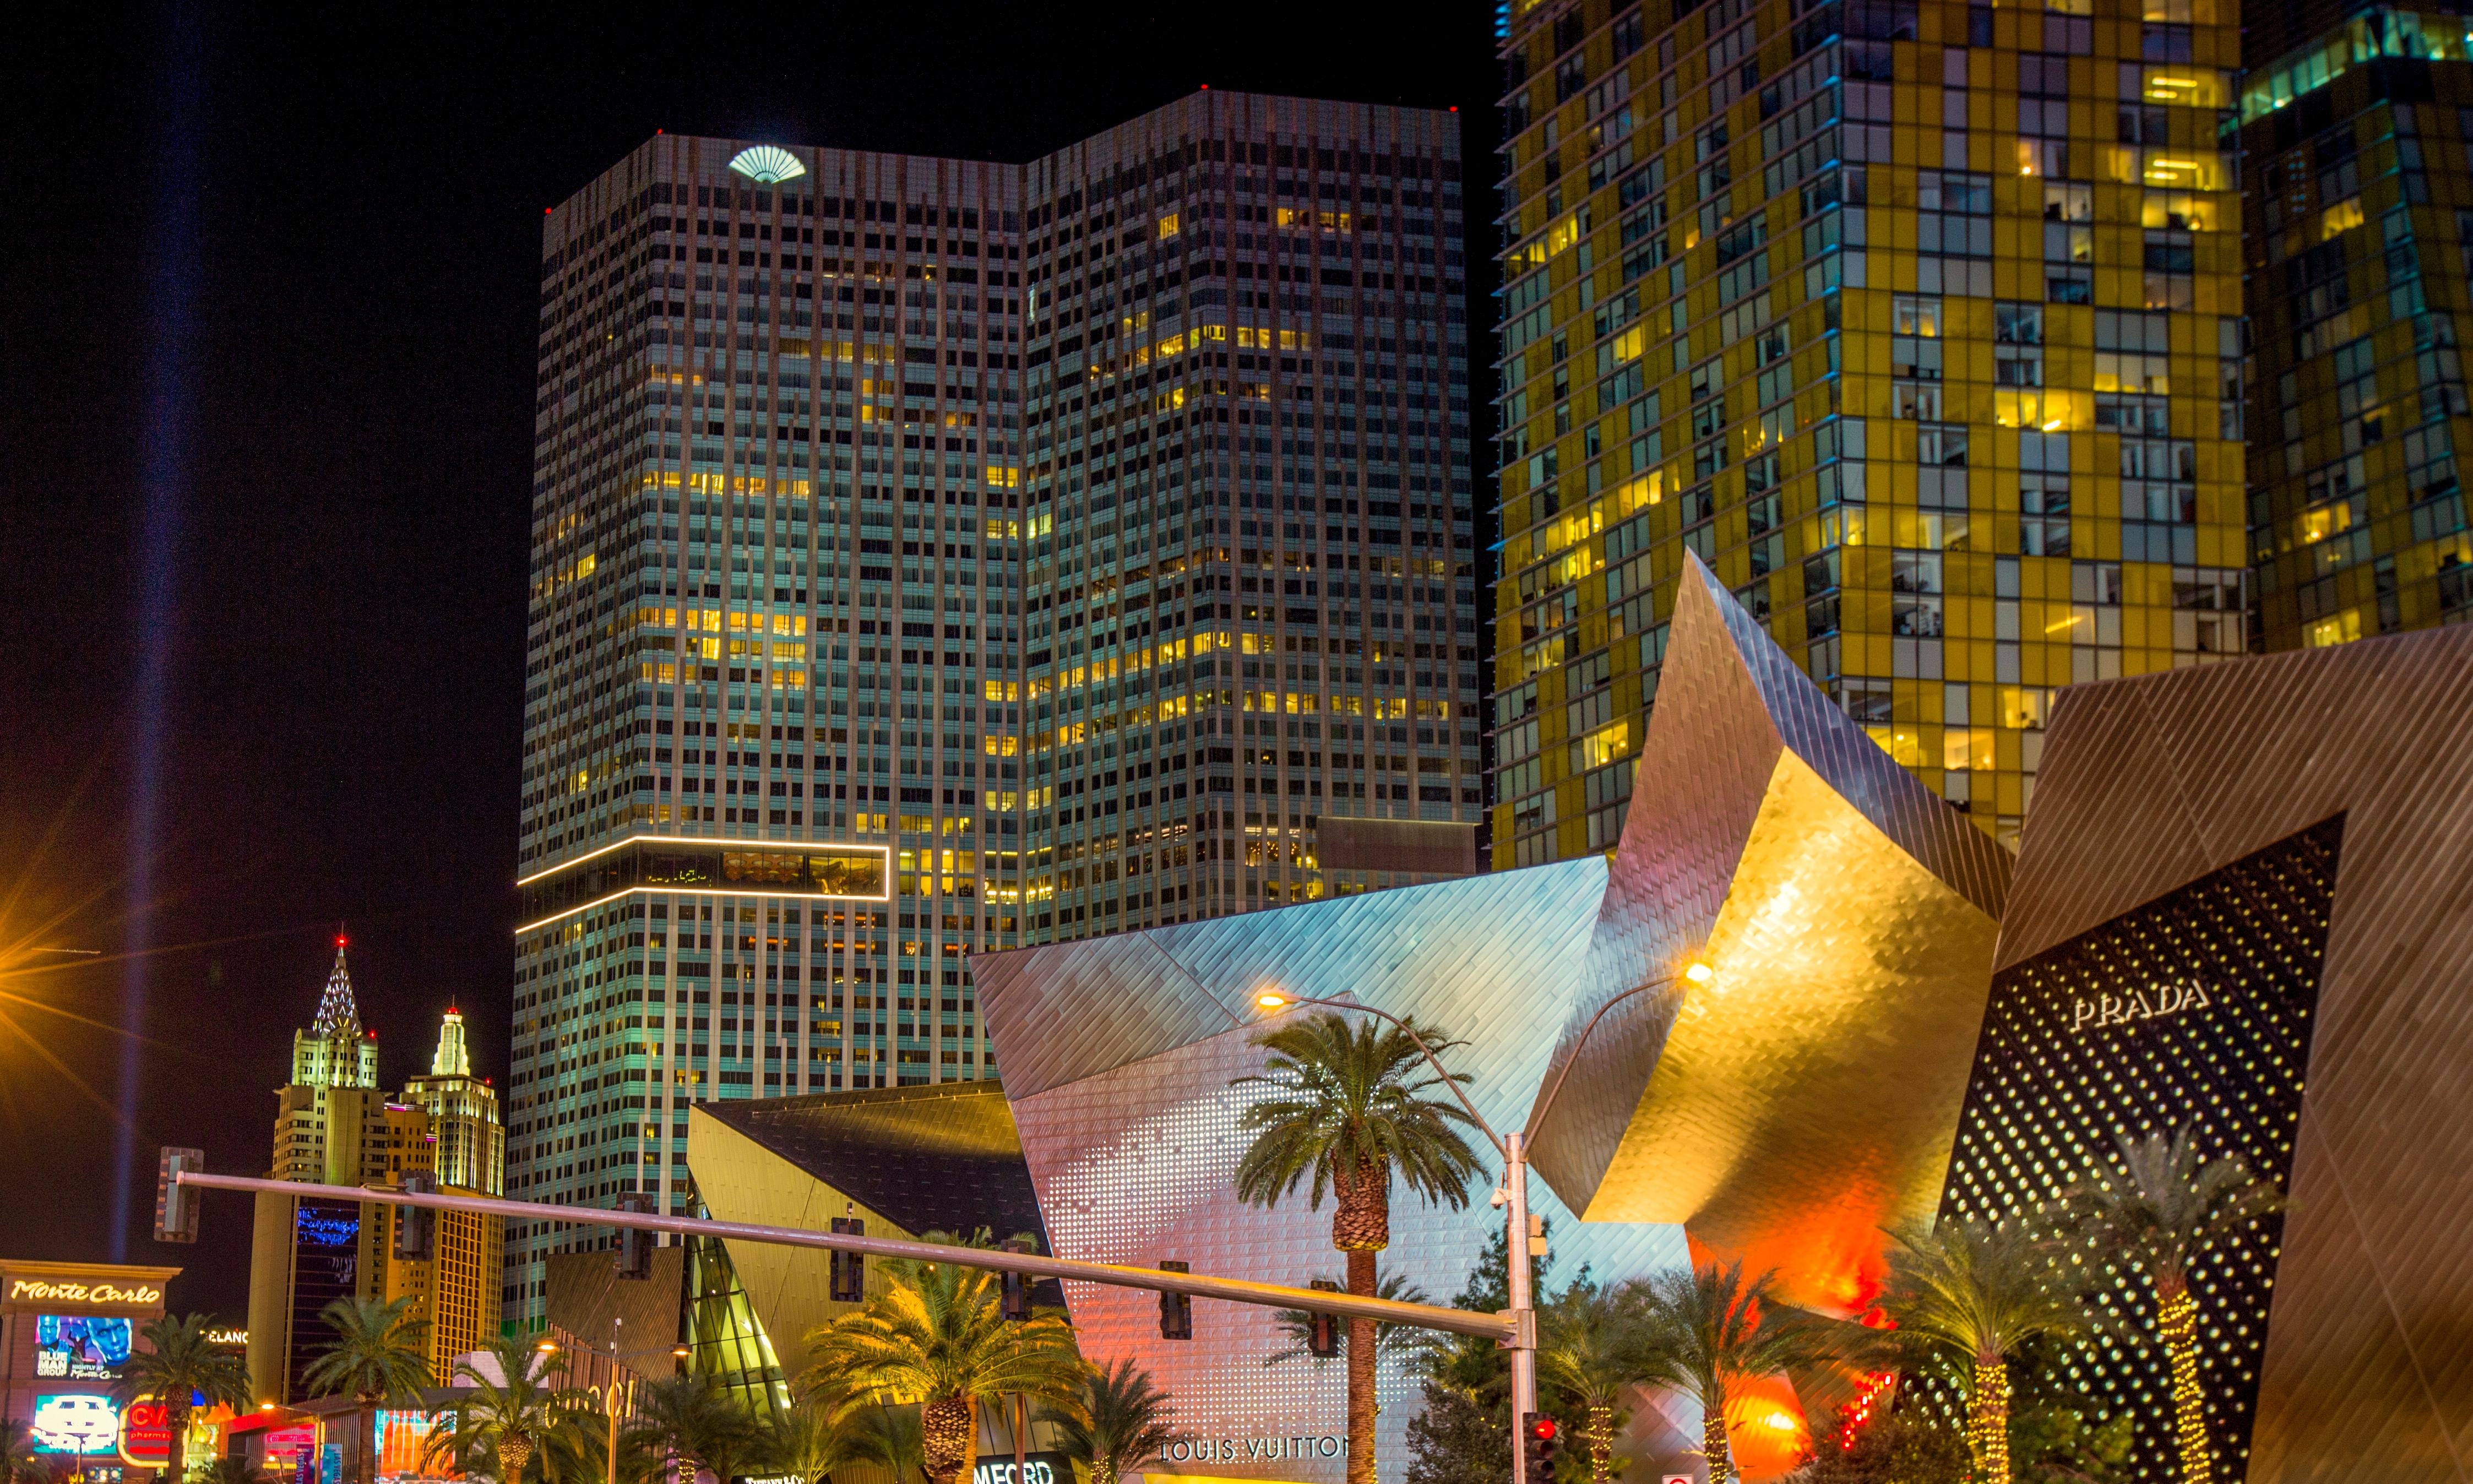 Las Vegas Casino Royale Night Illumination, LV Strip, Nevada, USA